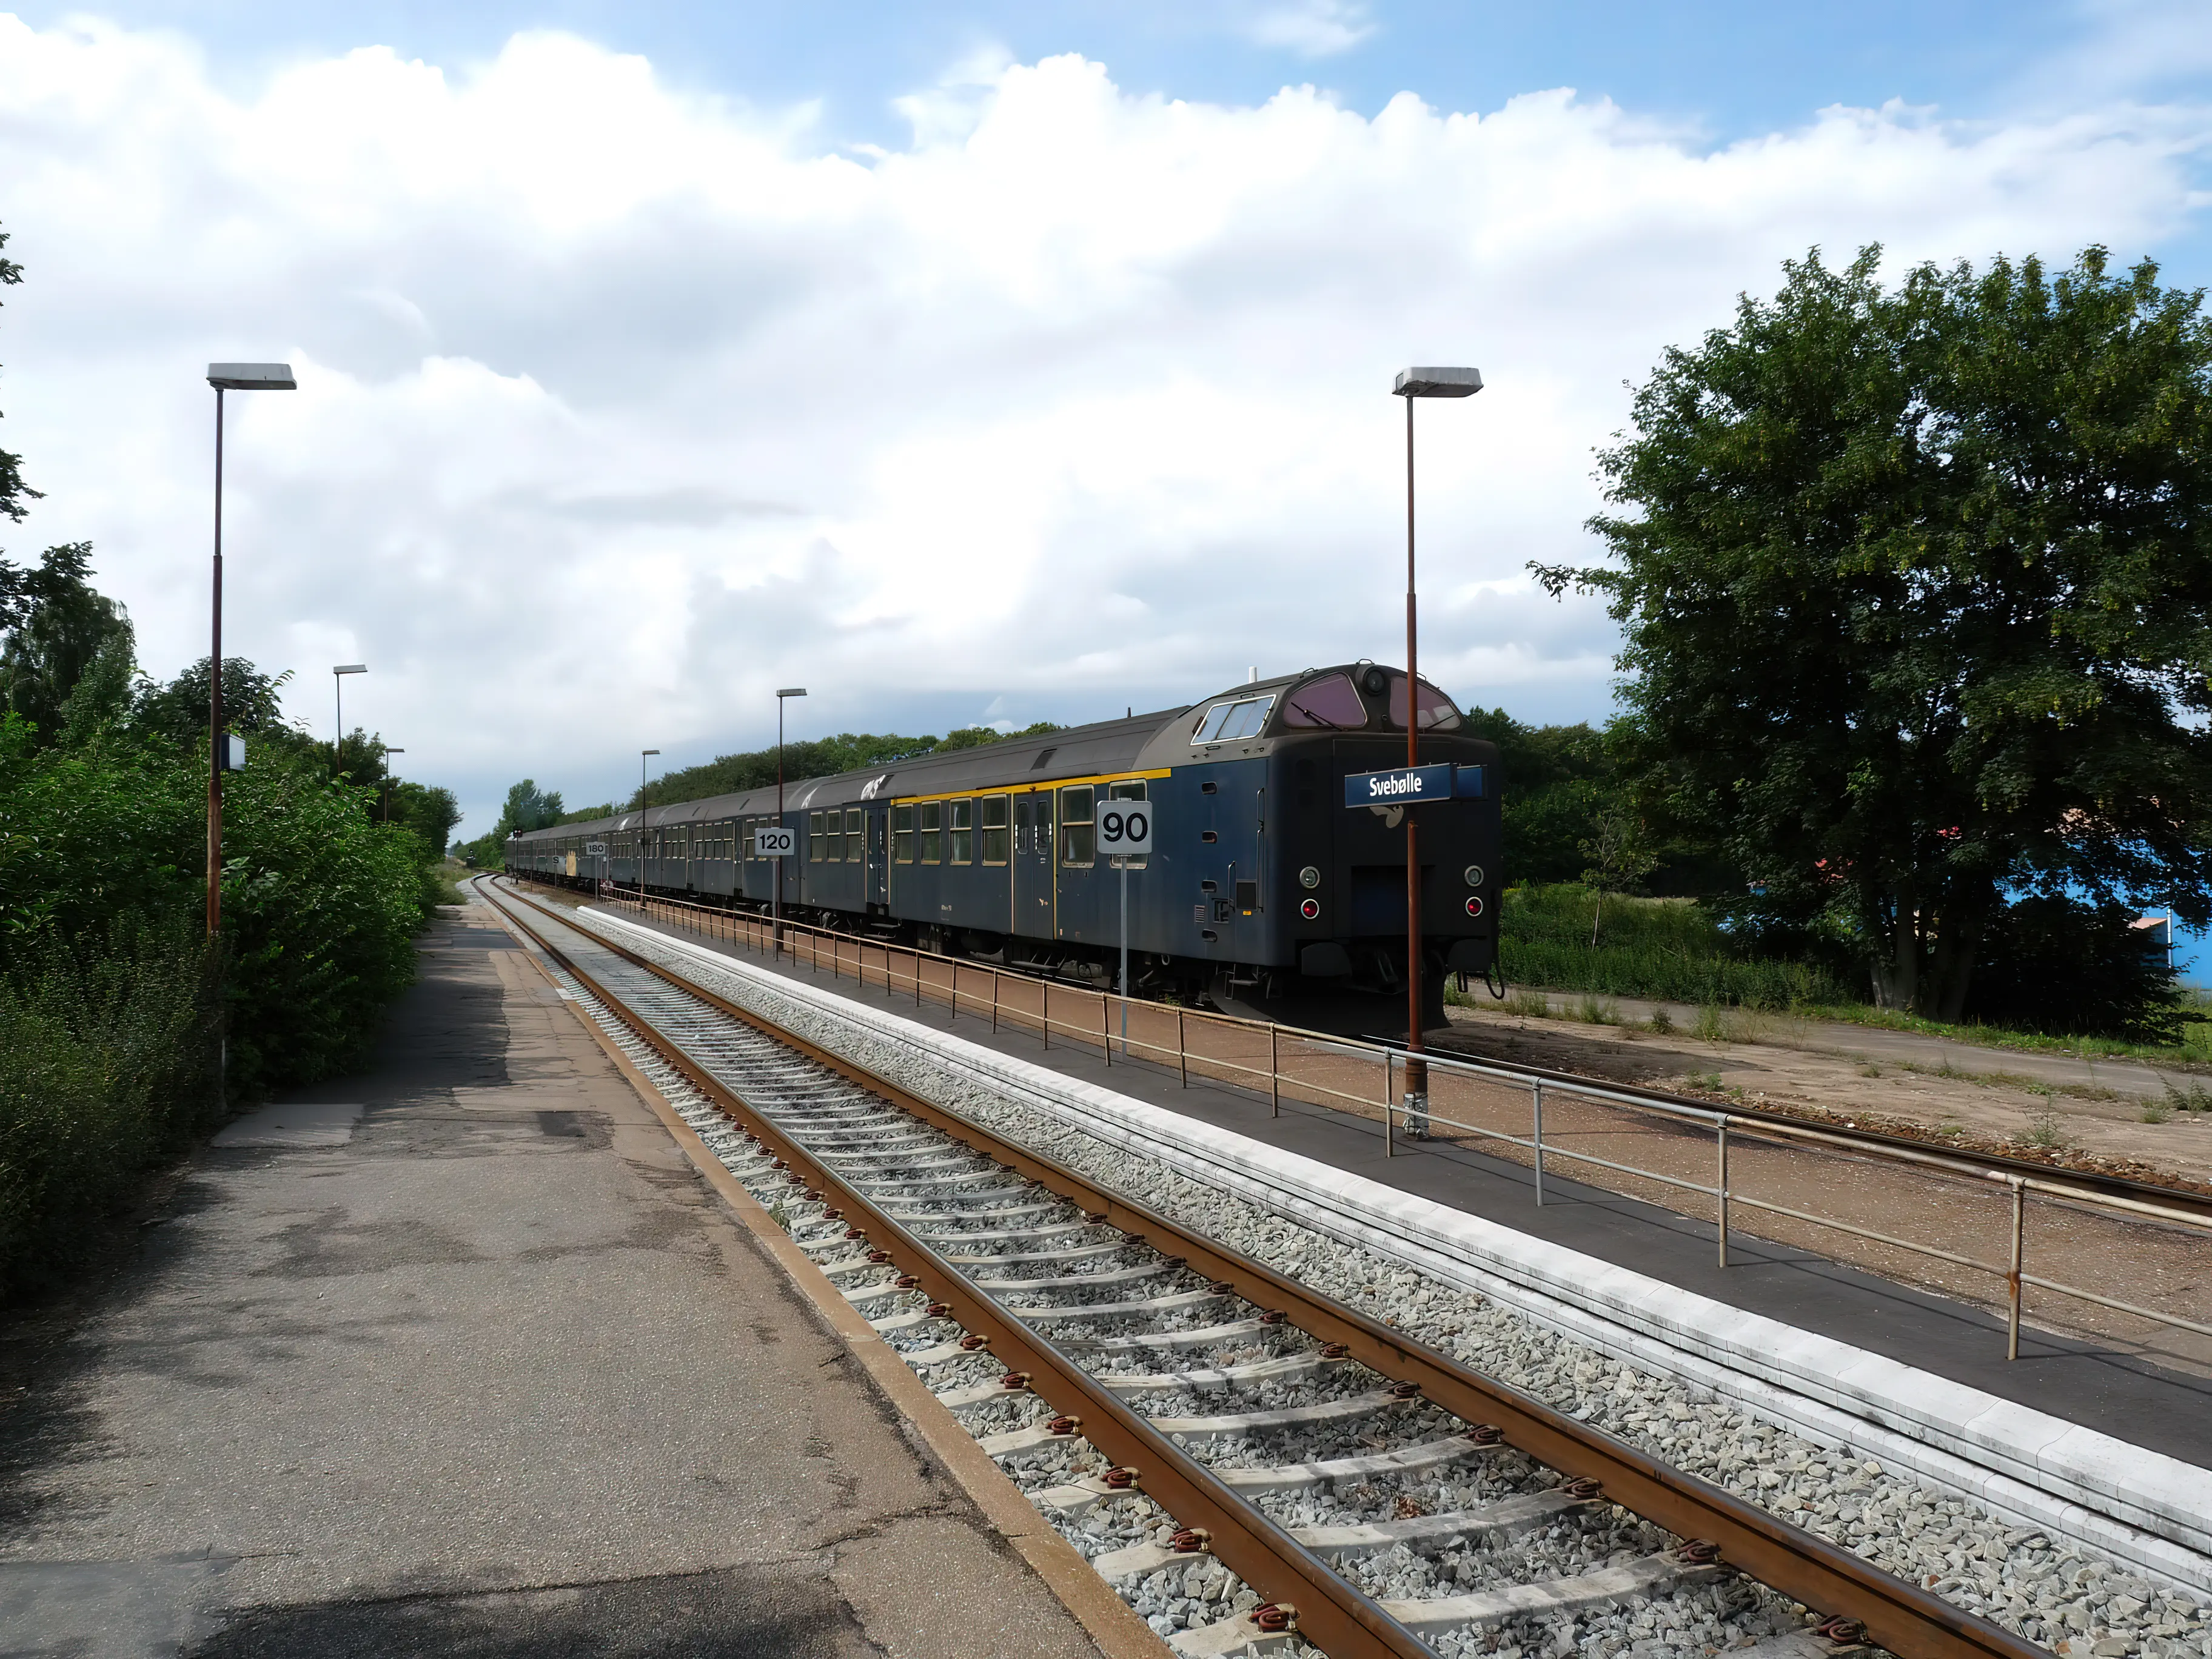 Billede af tog ud for Svebølle Station.